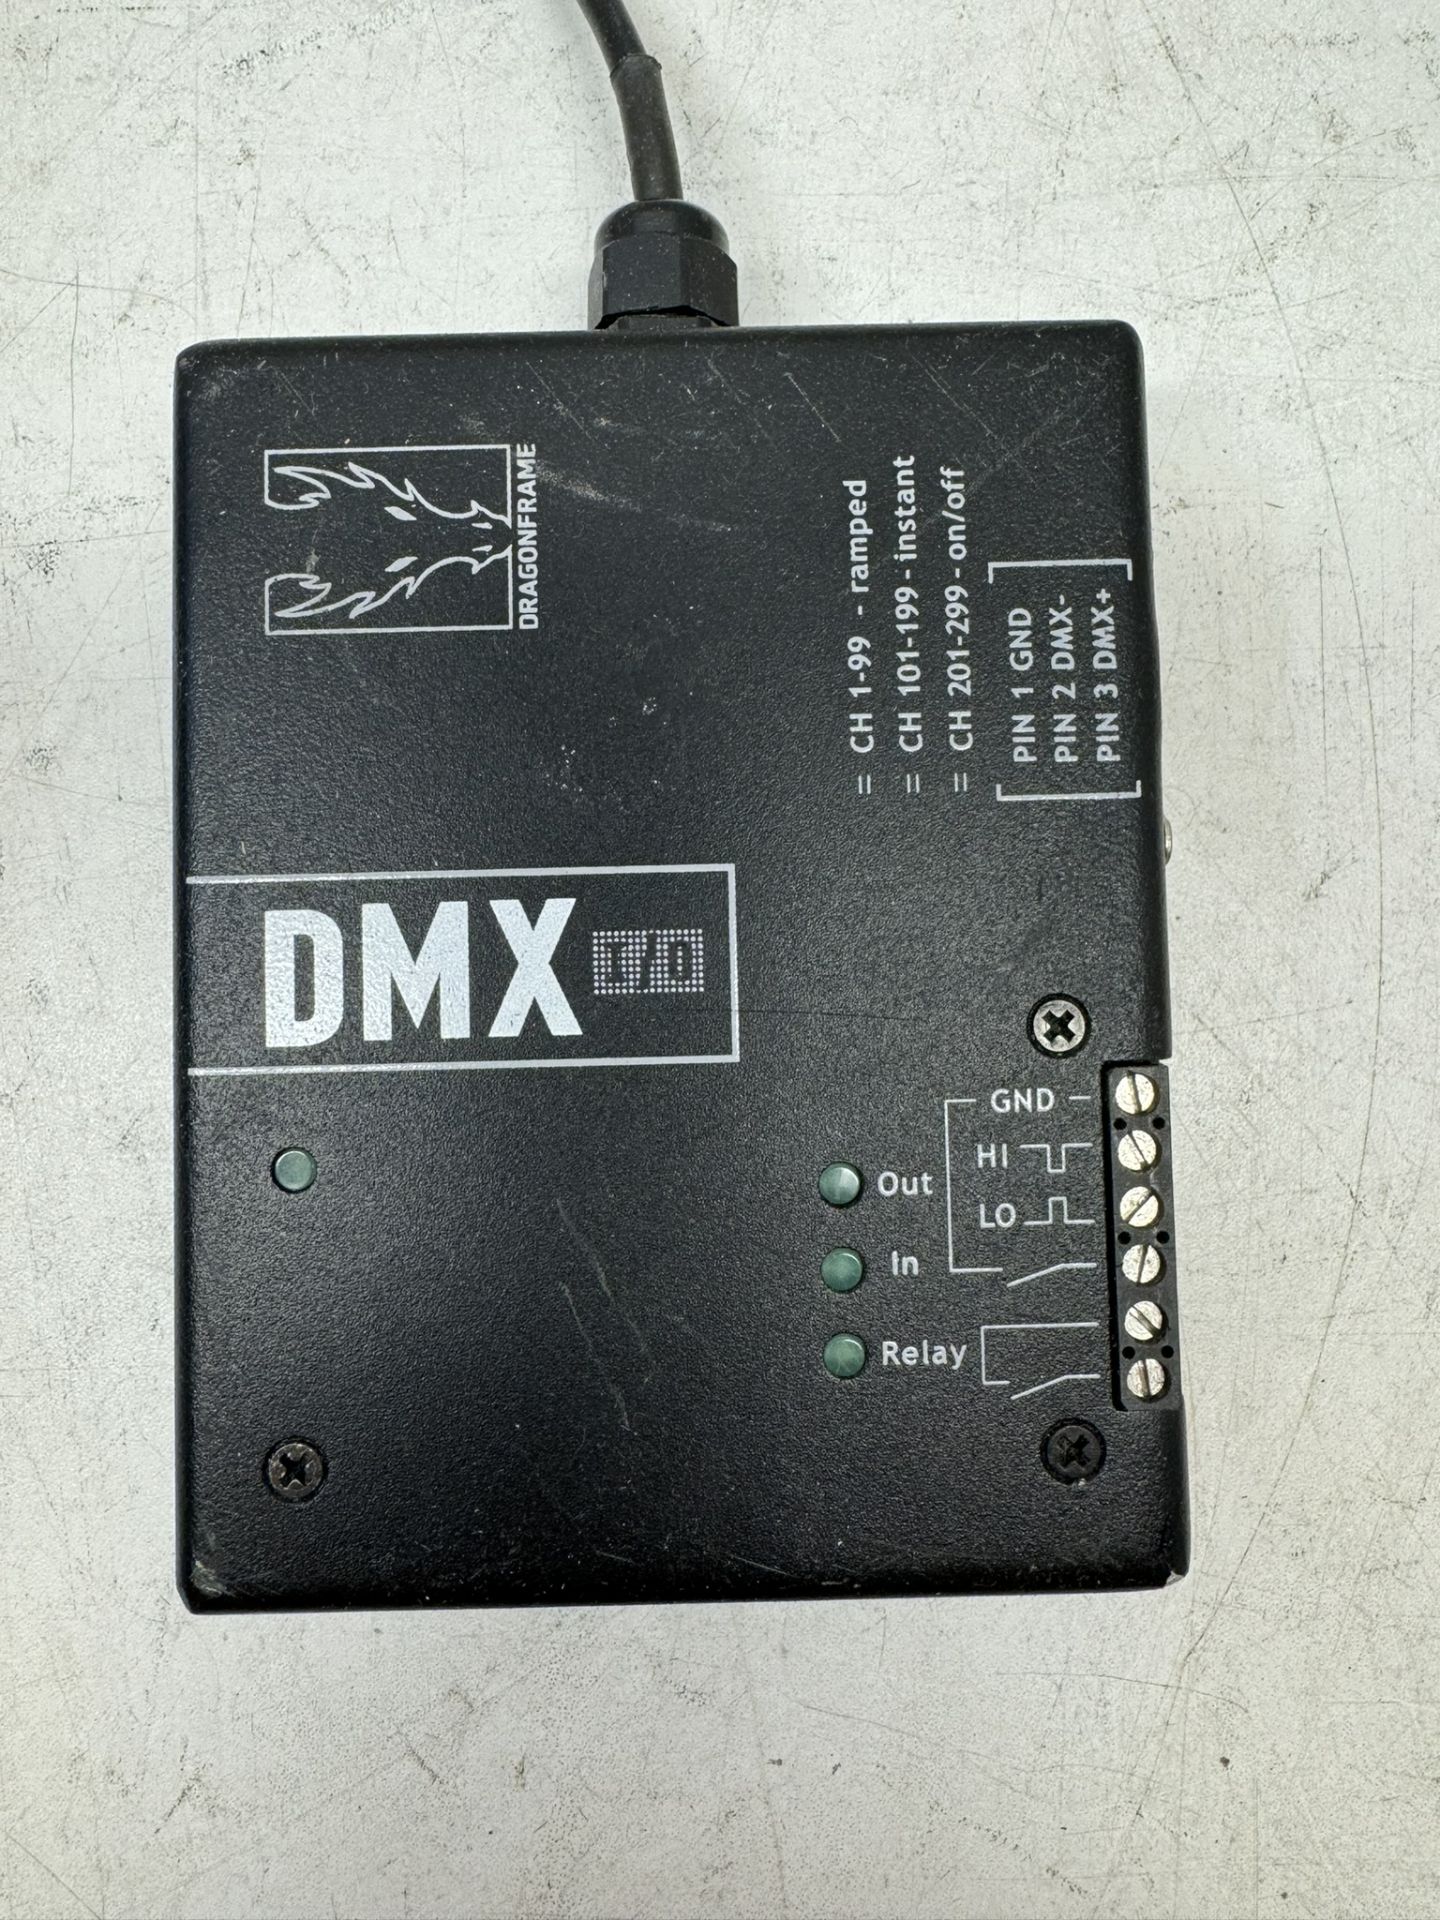 Dragonframe DMX I/O ADVANCED LIGHTING CONTROL - Image 3 of 3